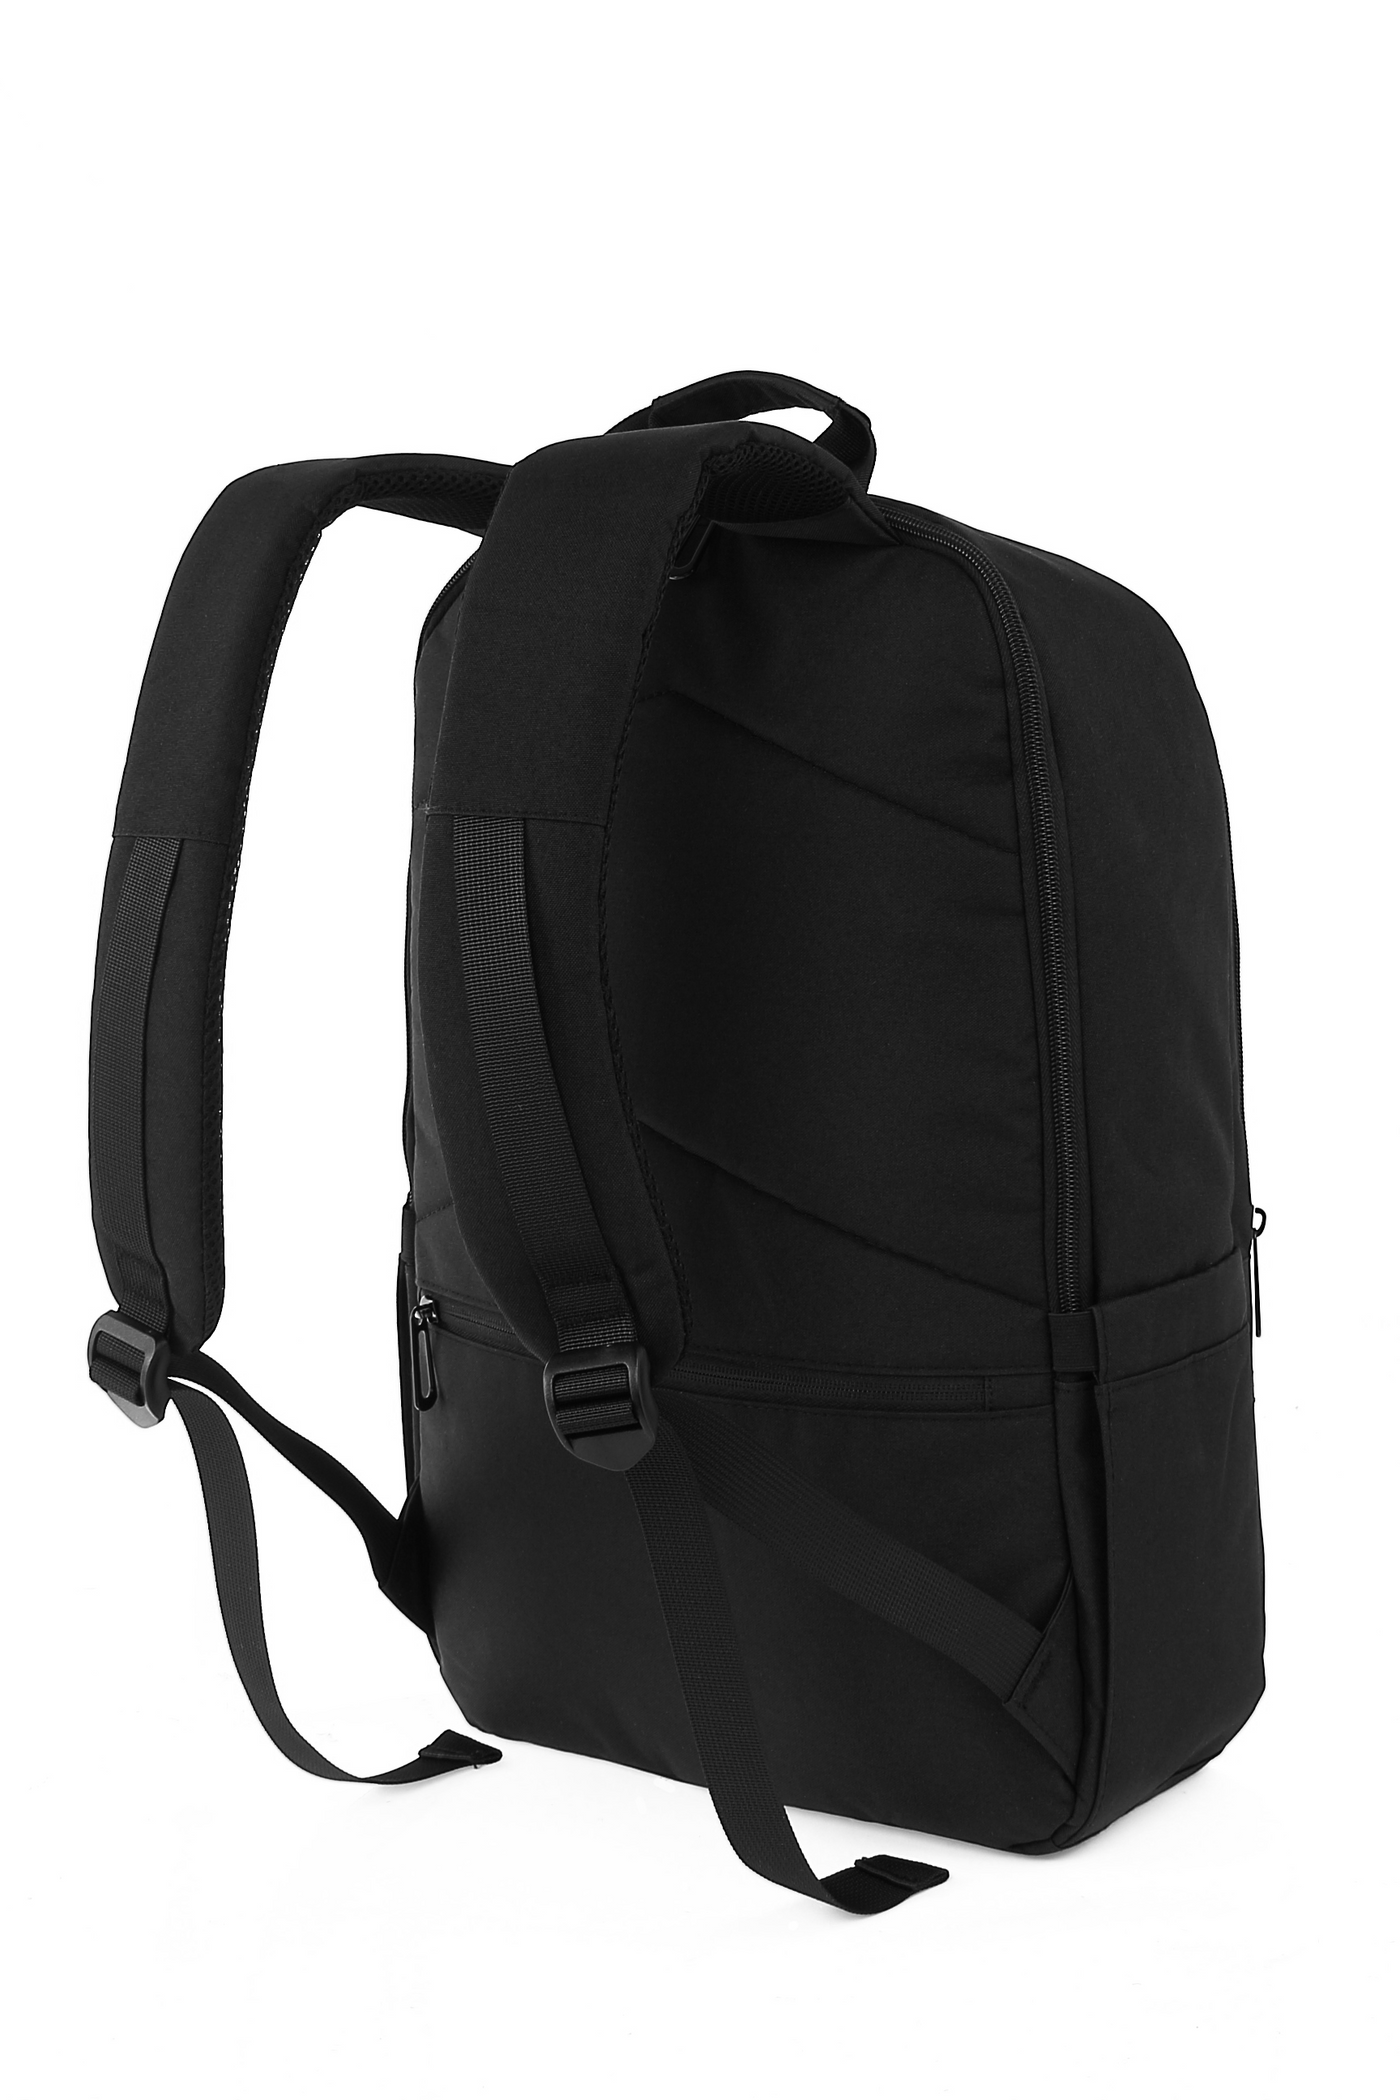 MAGIX 16" Explorer Laptop Backpack with Internal Pocket (BLACK)